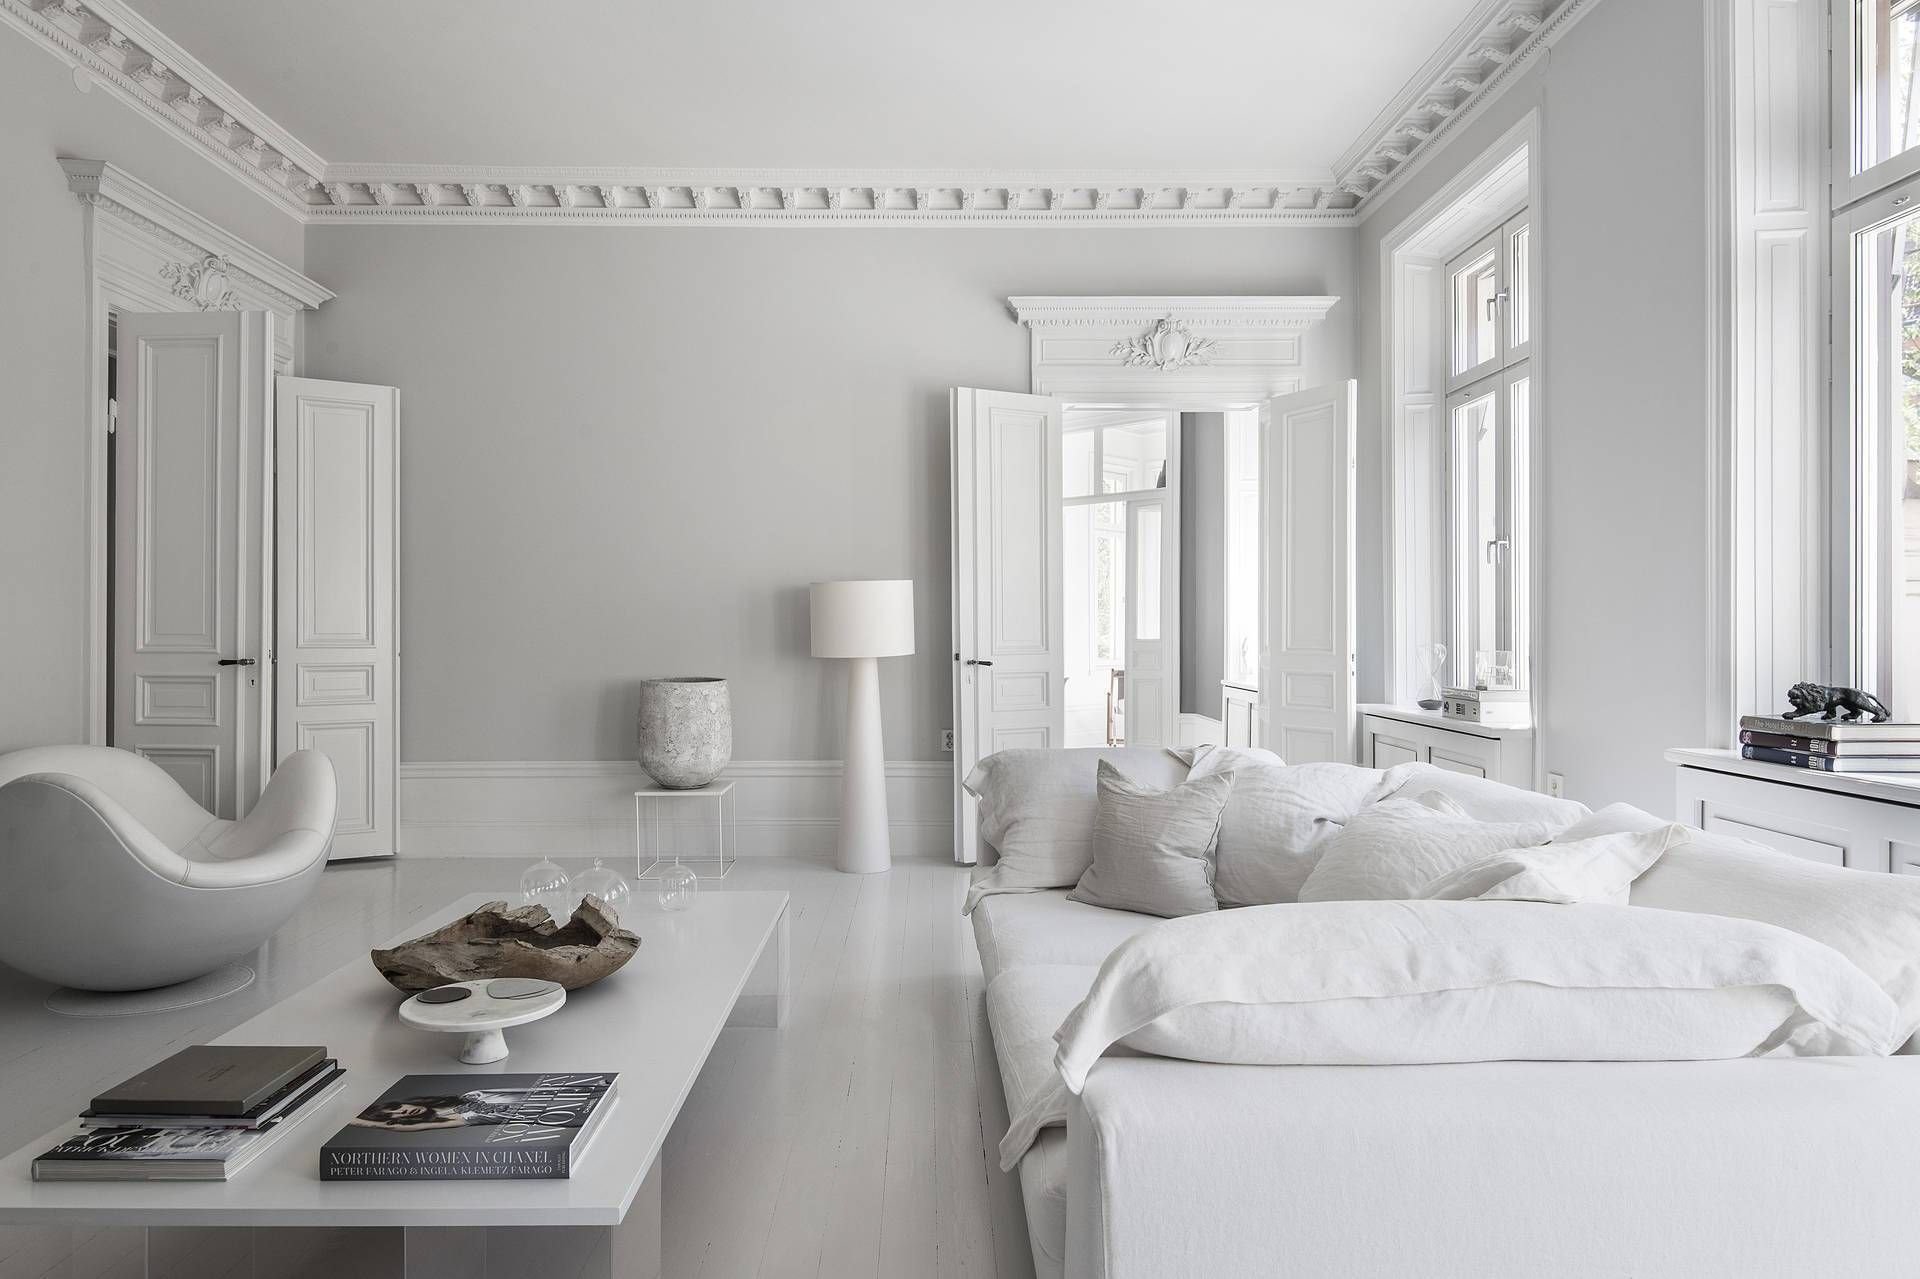 salon con molduras en el techo y sofa de color blanco